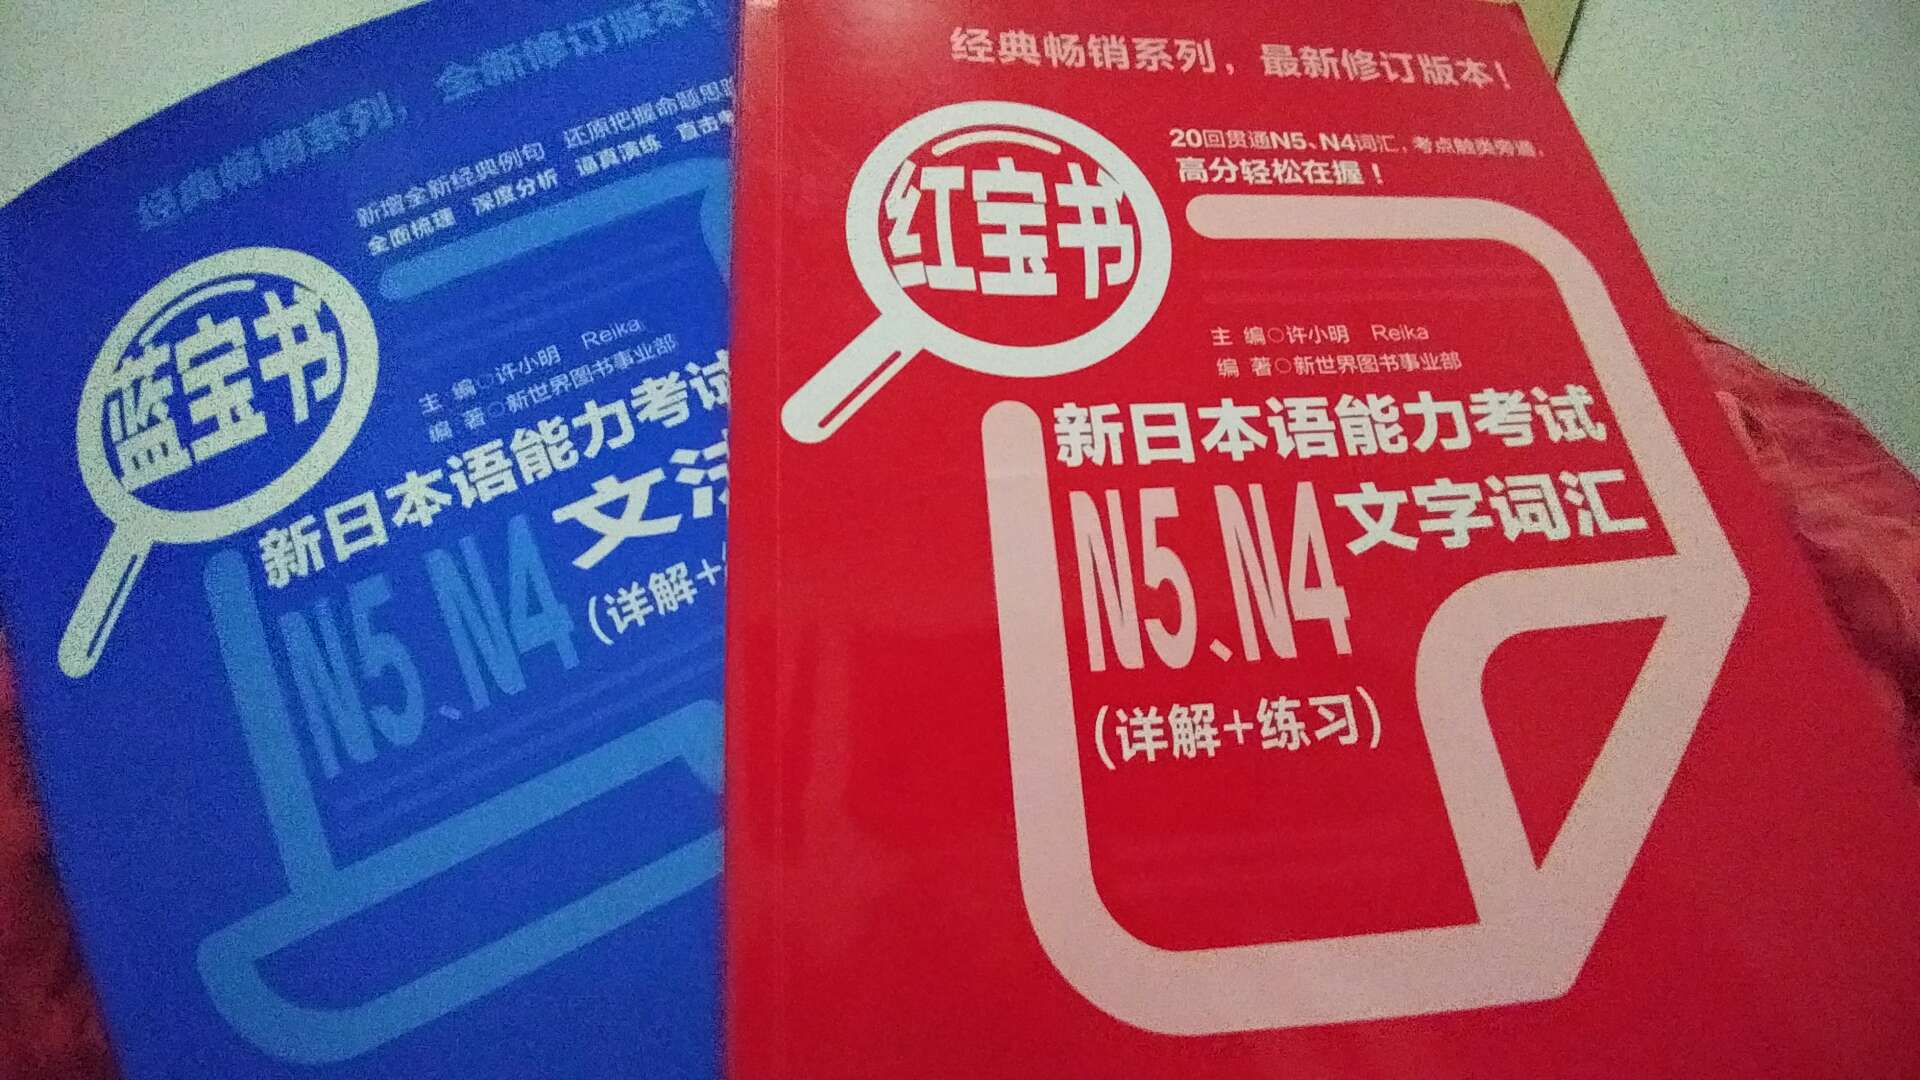 和红包书一起买的，语法很详细，N4N5的语法是分开的，跟着走练习可以做。很赞